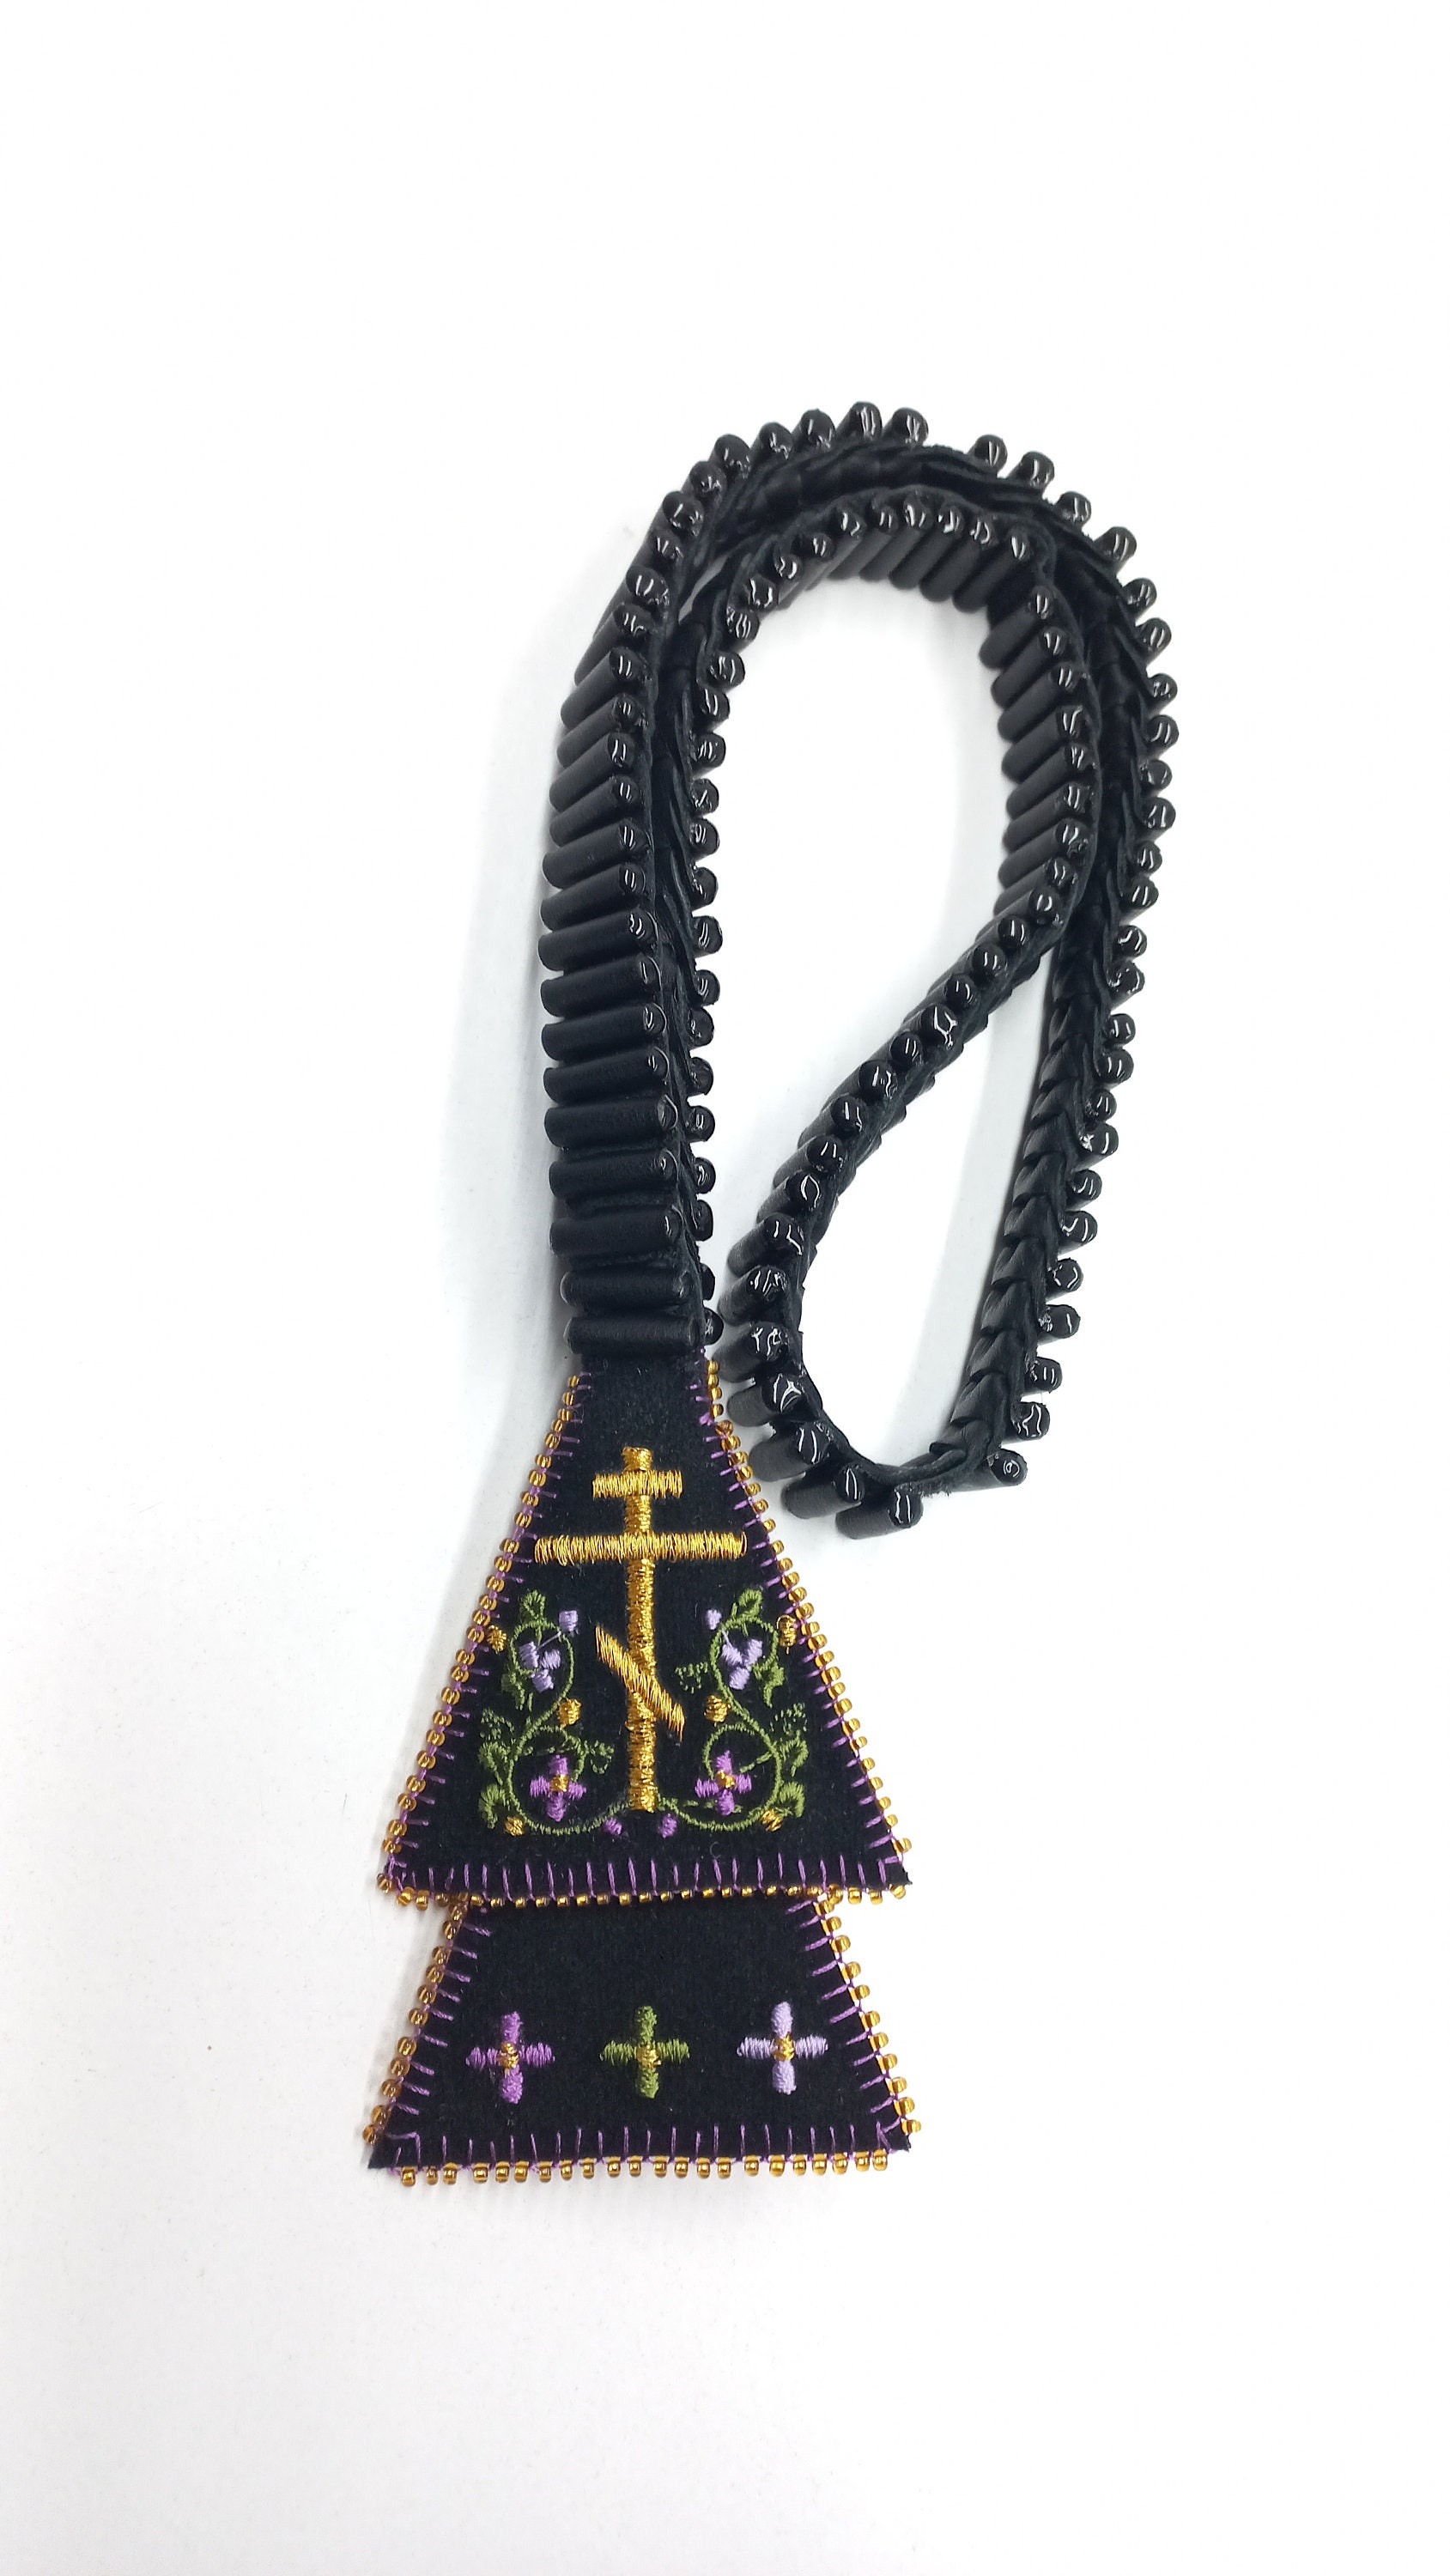 Russian Prayer Rope (Chotki)